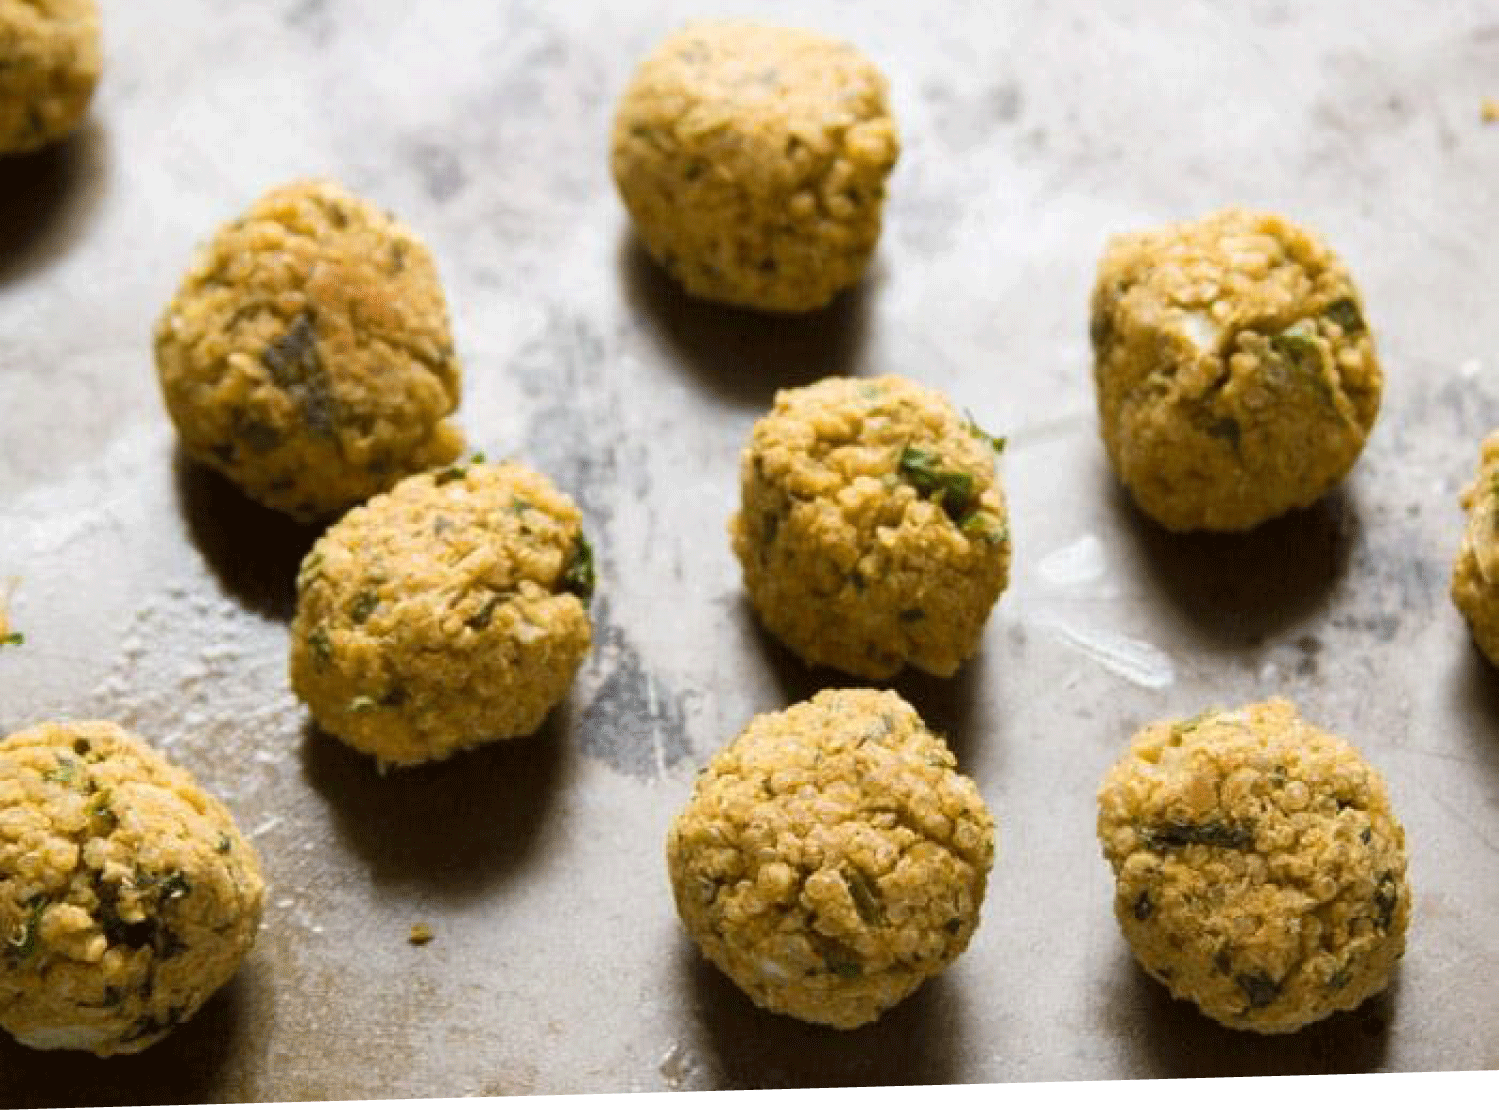 Baked Quinoa Falafel balls